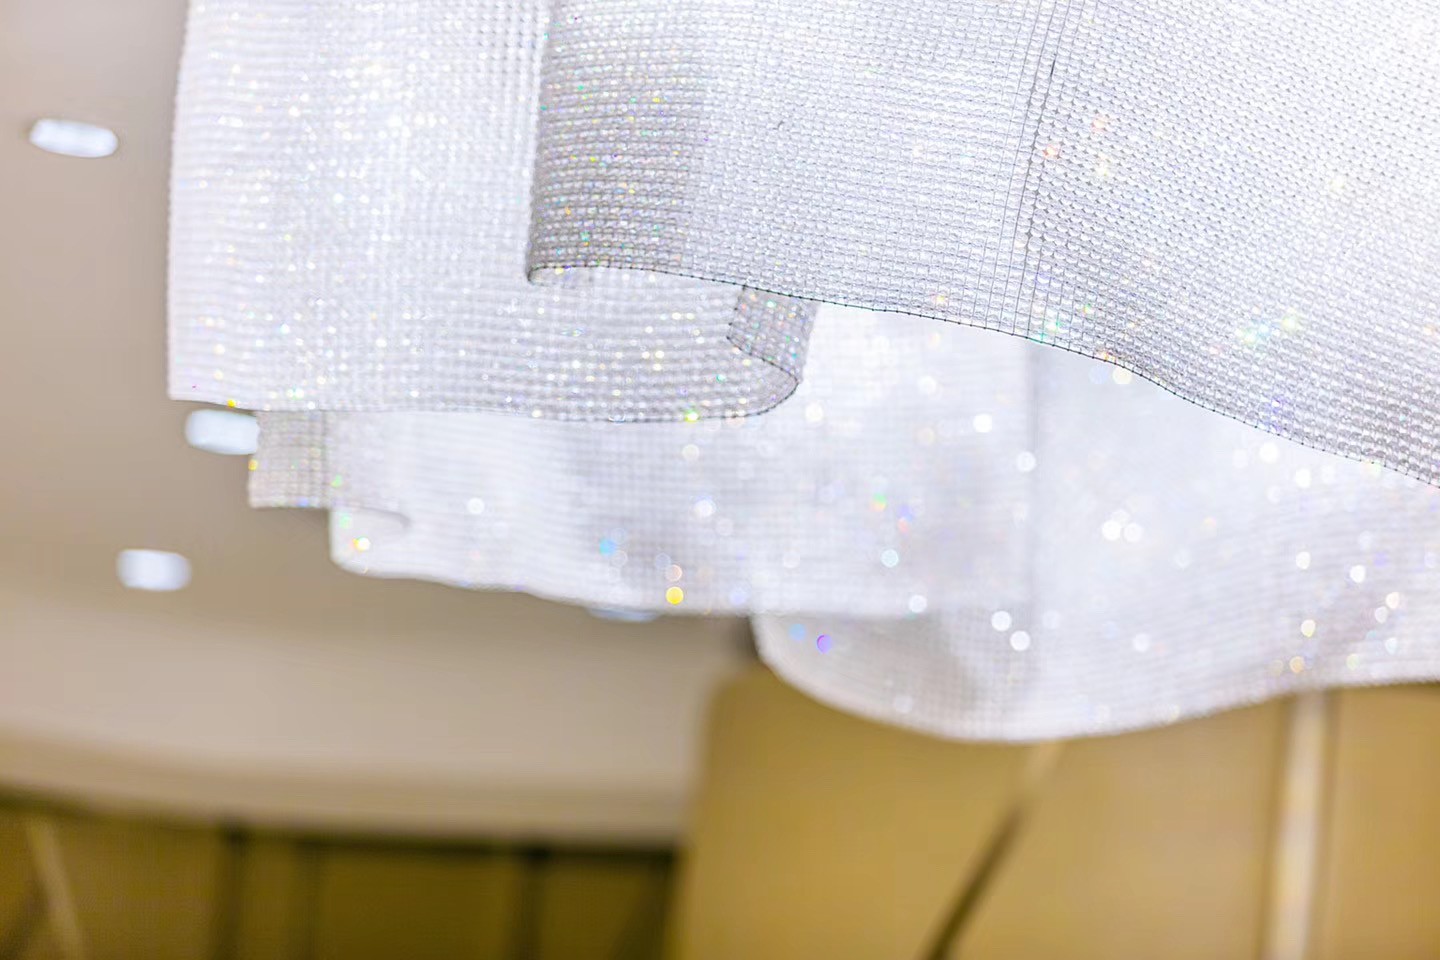 Flower shape crystal blanket custom chandeliers Elegant hotel indoor lighting